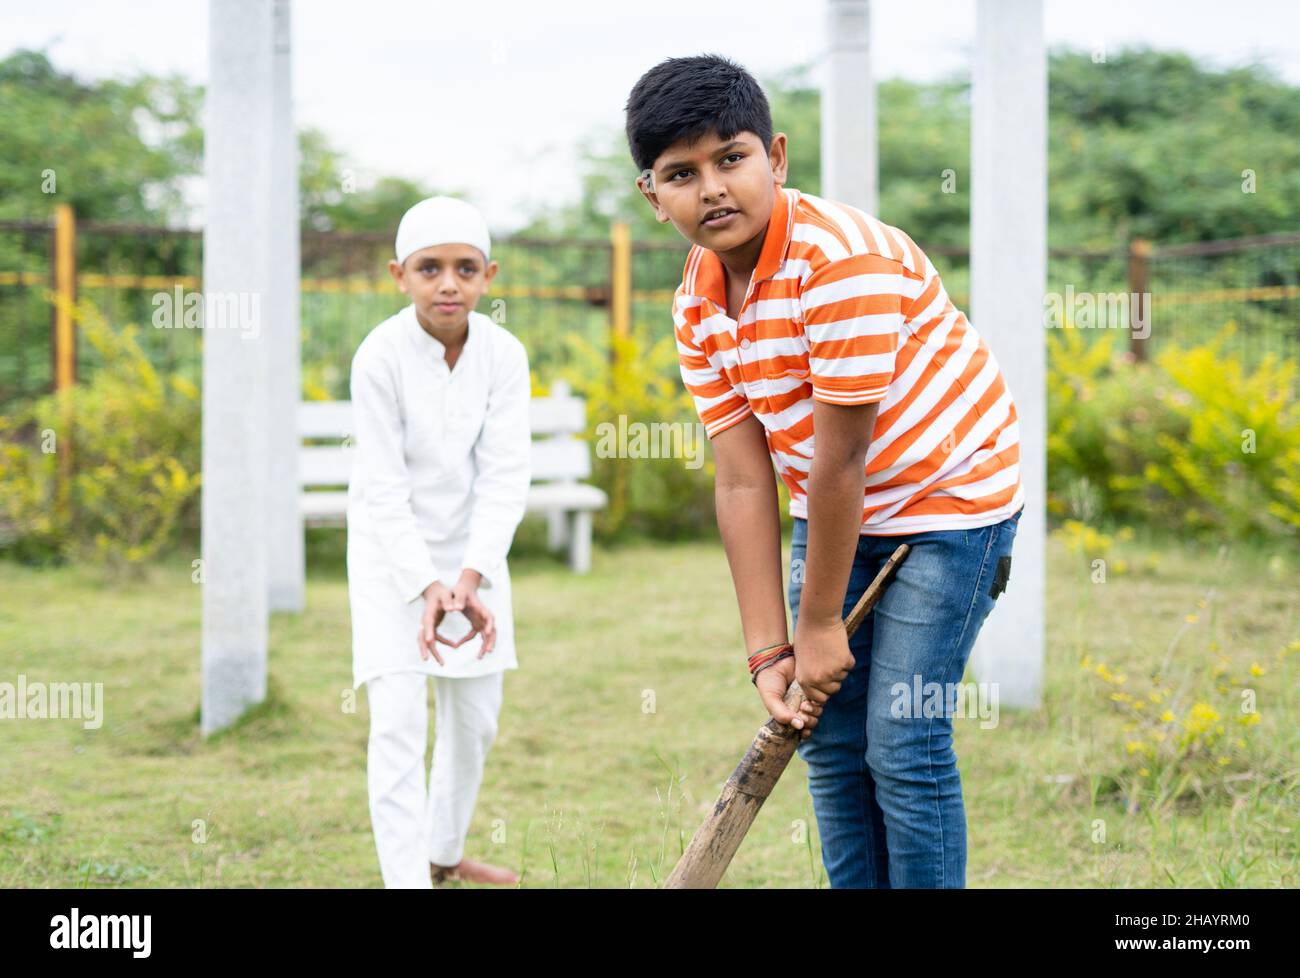 Konzentrieren Sie sich auf Front Kid multiethnische Kinder spielen Cricket im Park während Urlaub - Konzept der Freundschaft, Vielfalt und Outdoor-Aktivitäten Stockfoto